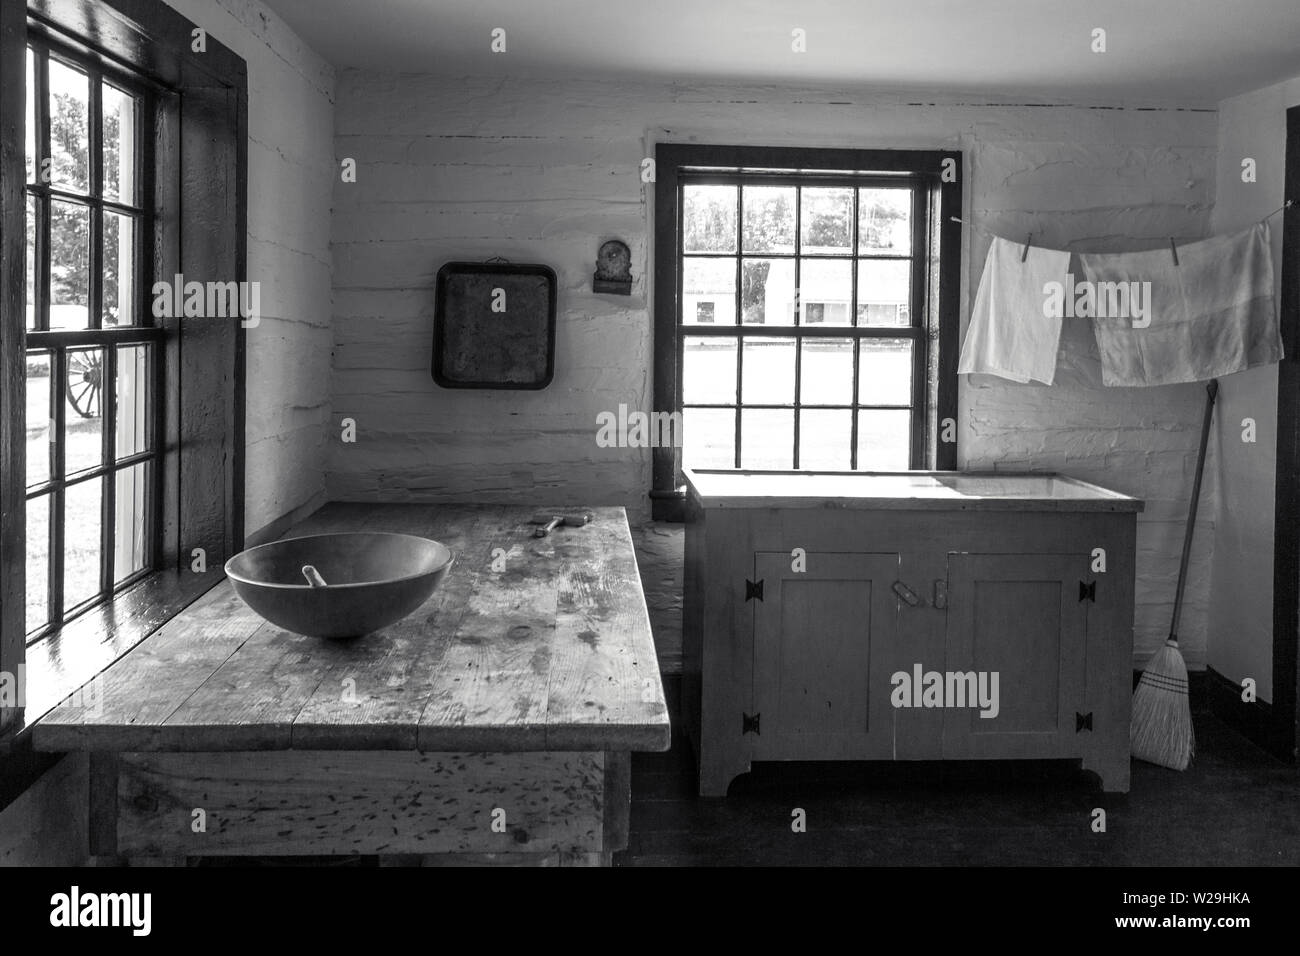 Land Küche Interieur. Rustikale Küche mit hölzernen Löffel und Schüssel auf antiken Holztisch mit einer Wäscheleine in der Ecke Stockfoto